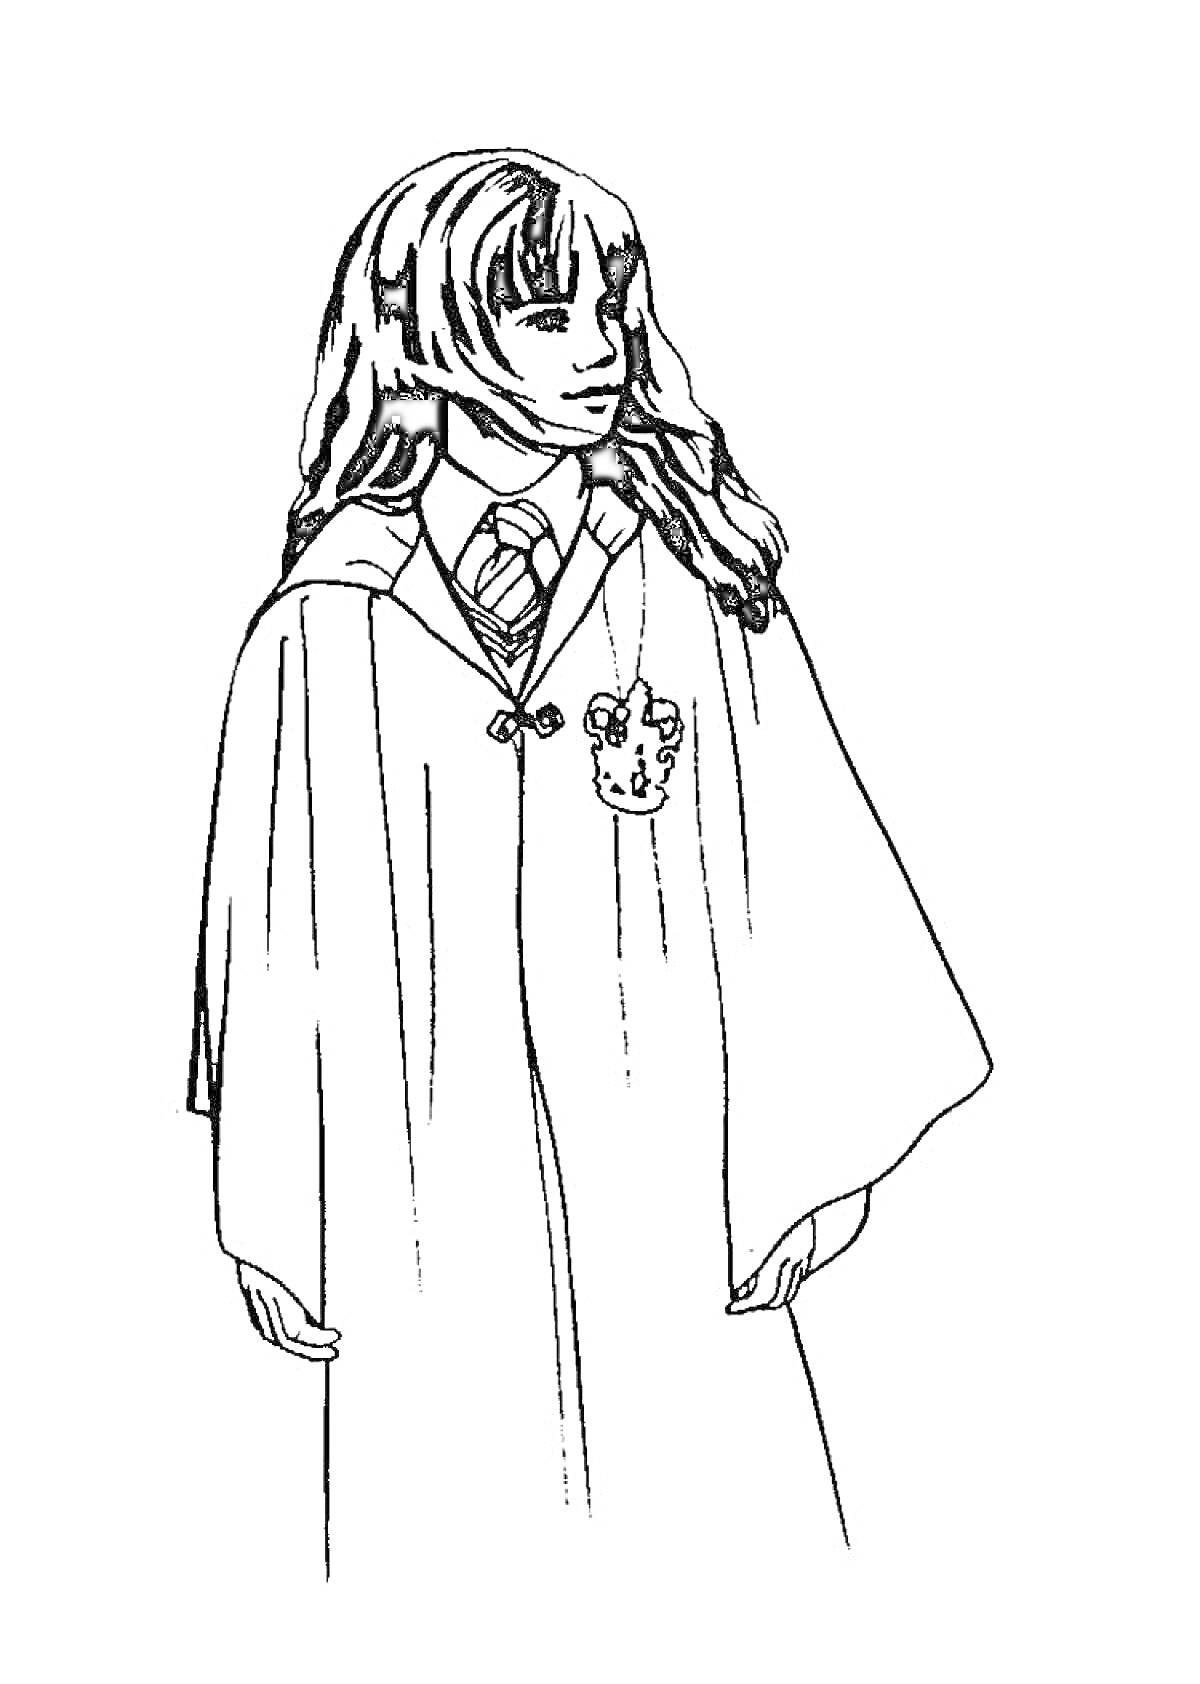 Девушка в длинной мантии с гербом, галстуком в полоску, длинными волосами и значком